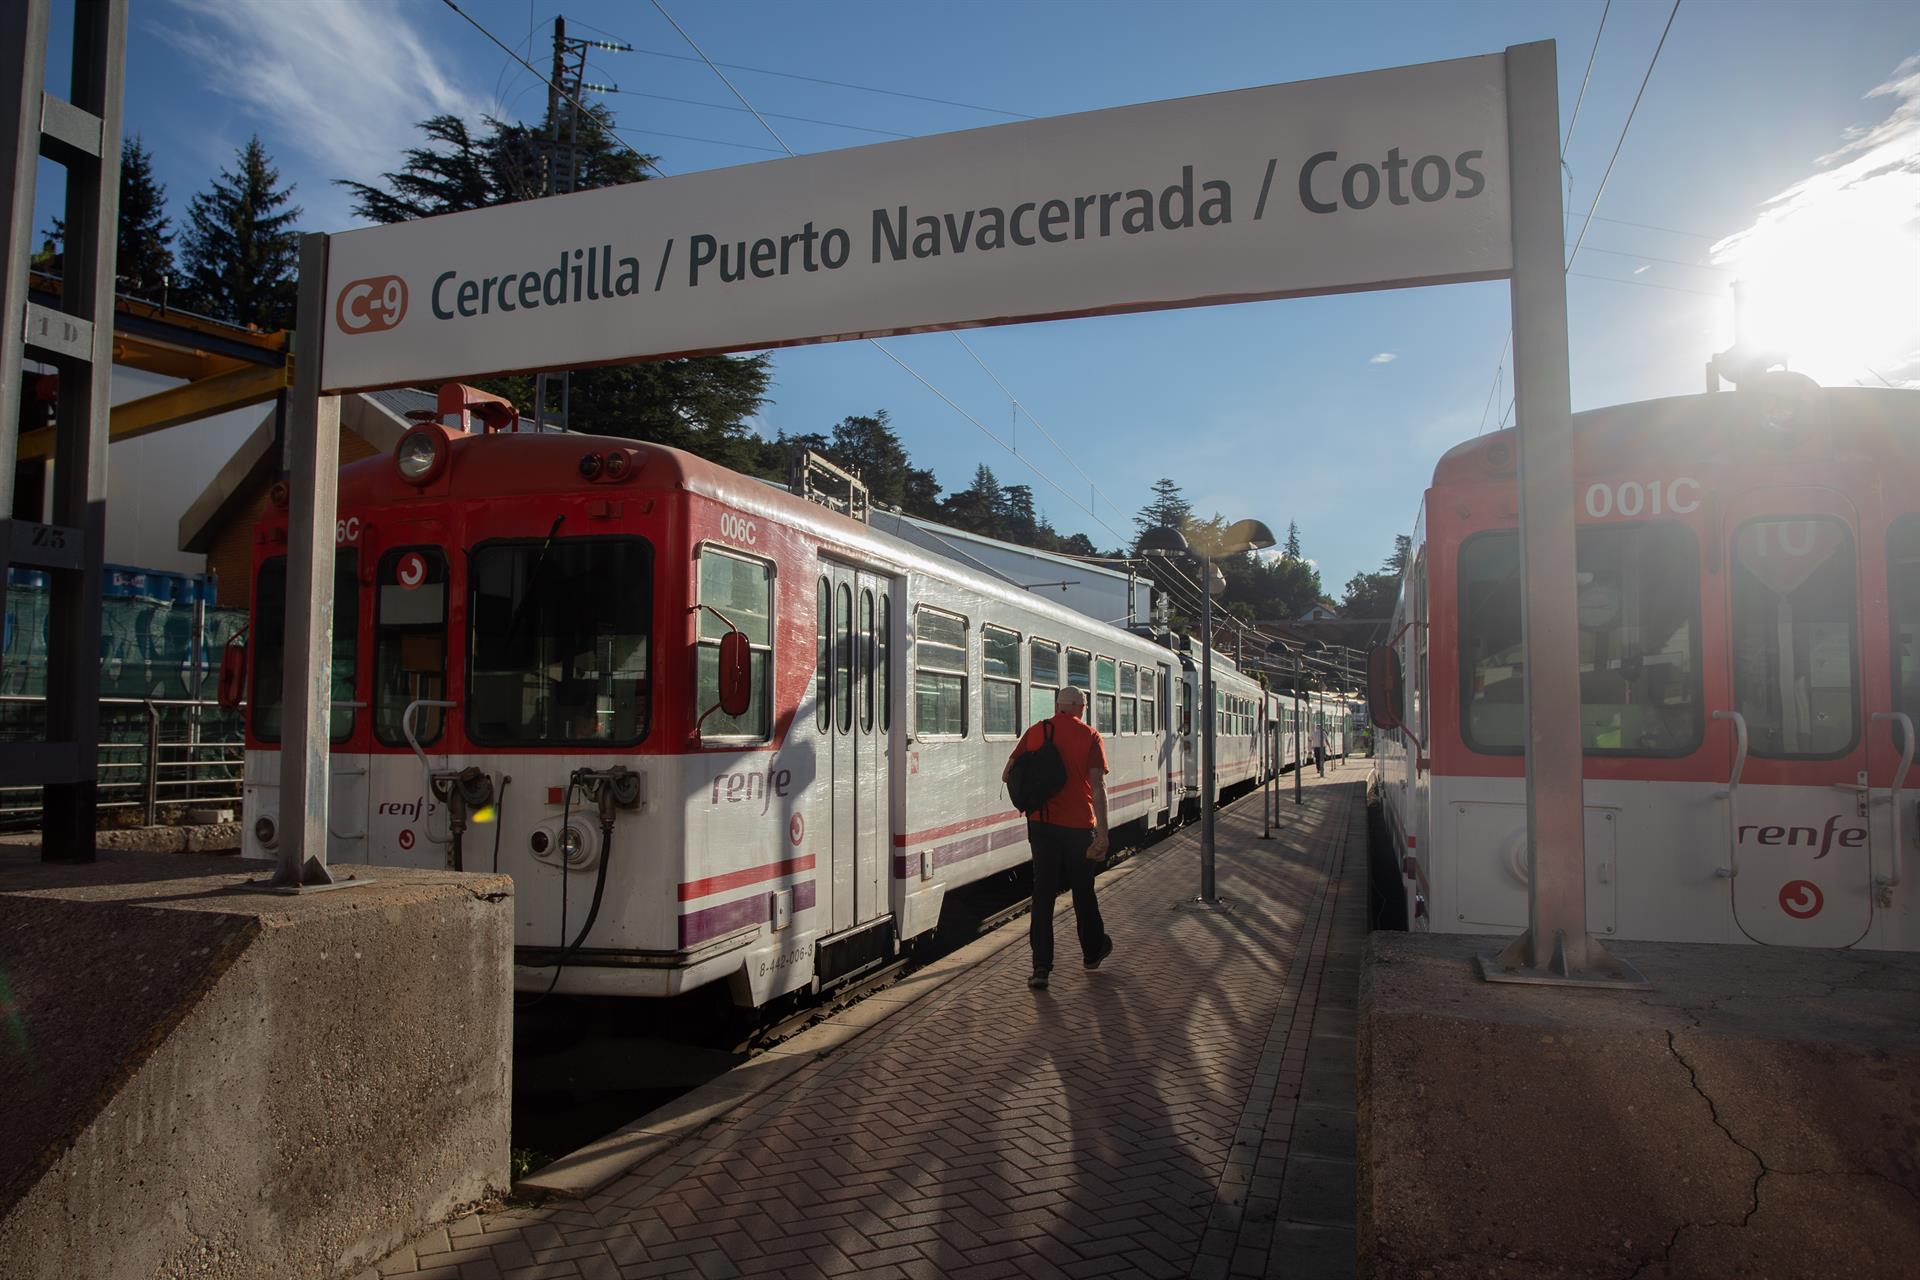 La C-9 de Cercanías entre Cercedilla y Cotos cierra a partir del 6 de mayo